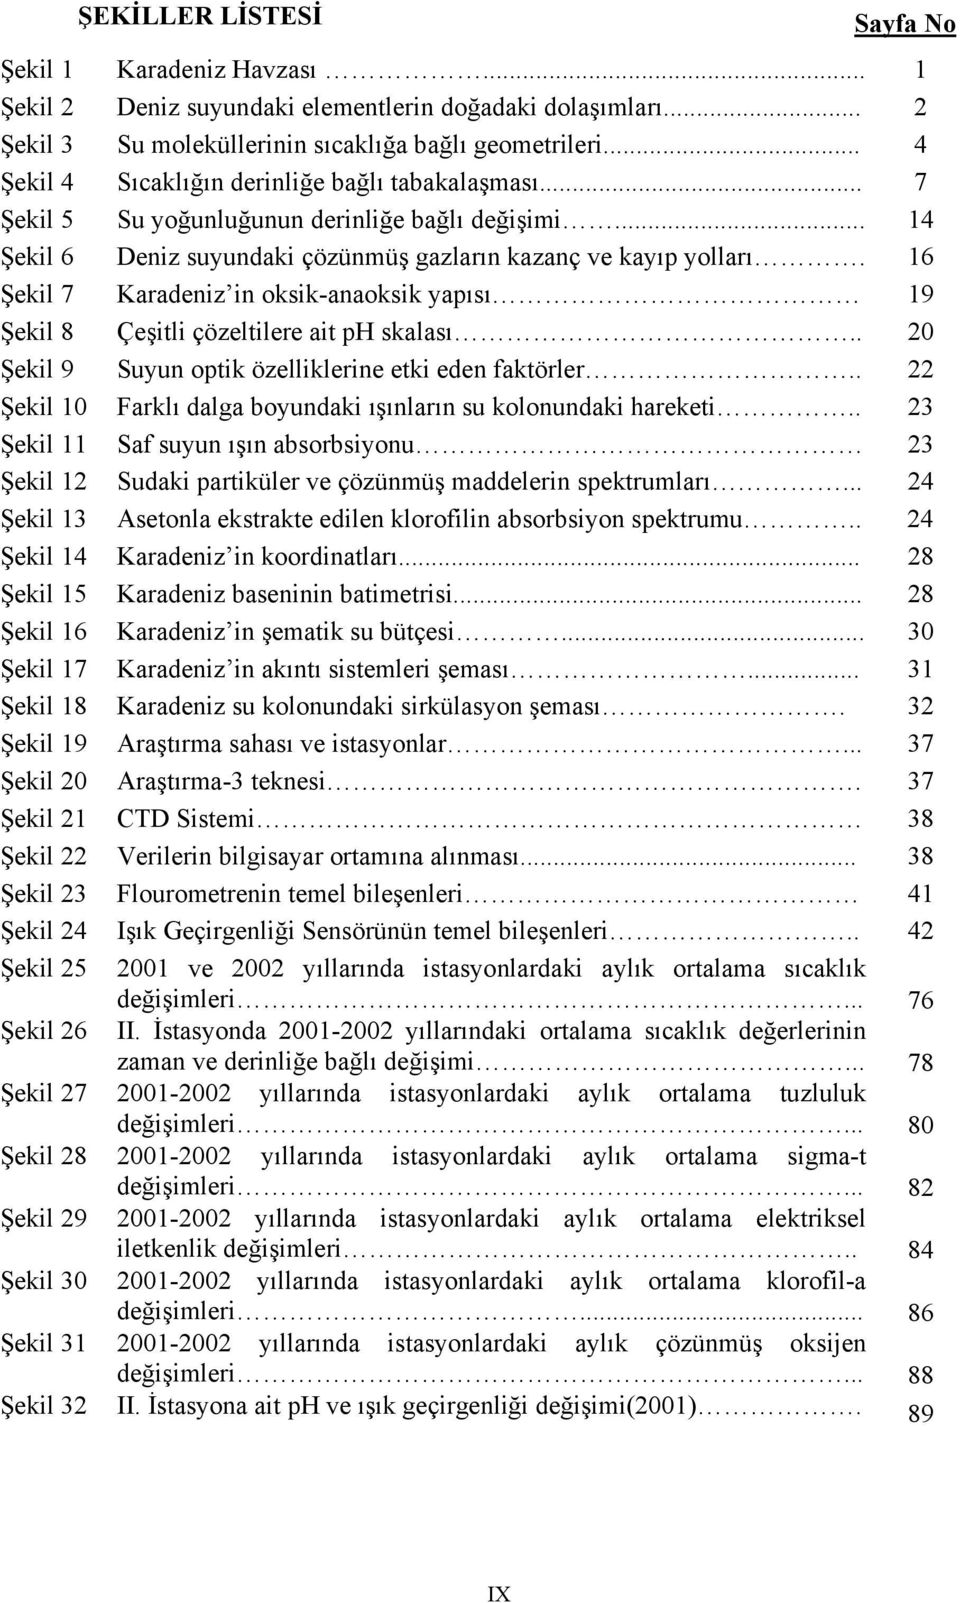 16 Şekil 7 Karadeniz in oksikanaoksik yapısı 19 Şekil 8 Çeşitli çözeltilere ait ph skalası.. 20 Şekil 9 Suyun optik özelliklerine etki eden faktörler.